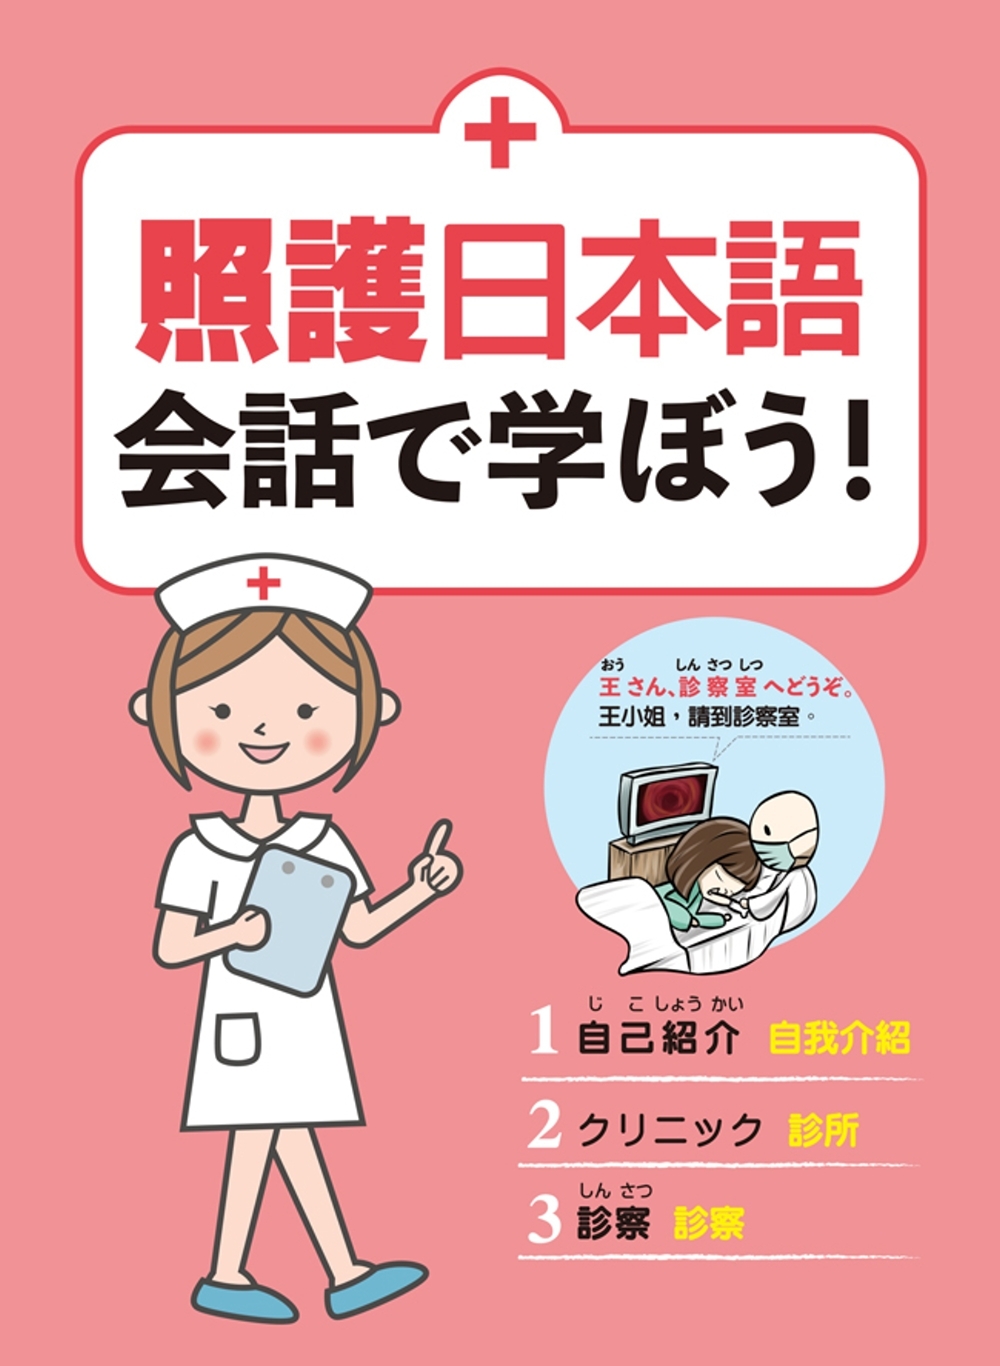 照護日本語 会話で学ぼう!